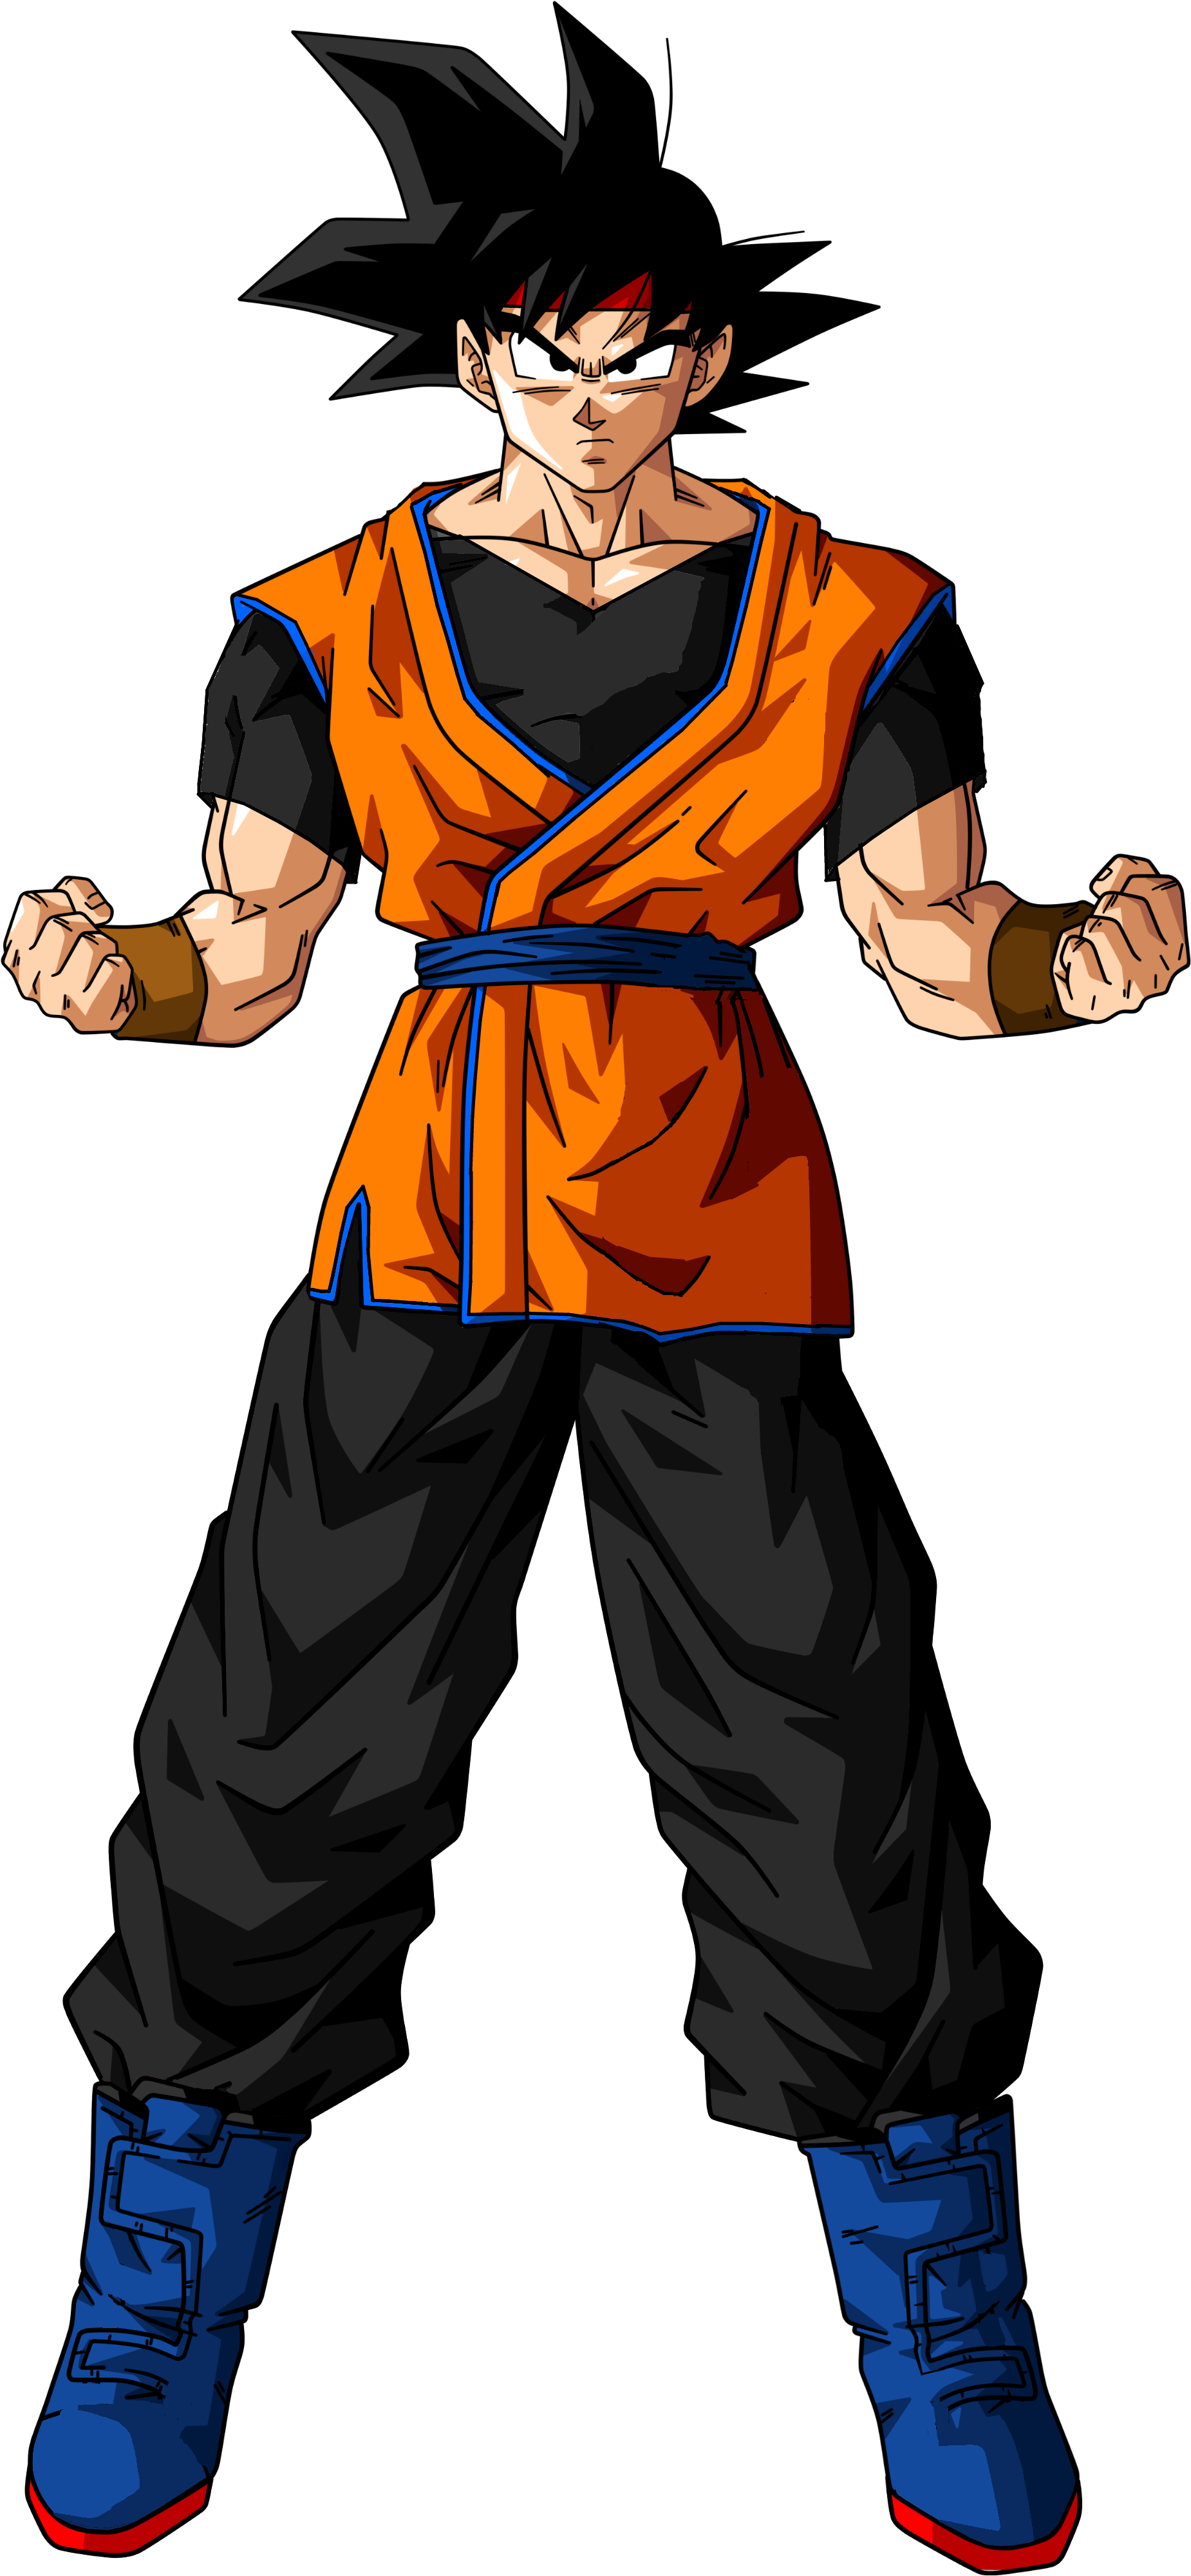 How To Look Like Goku